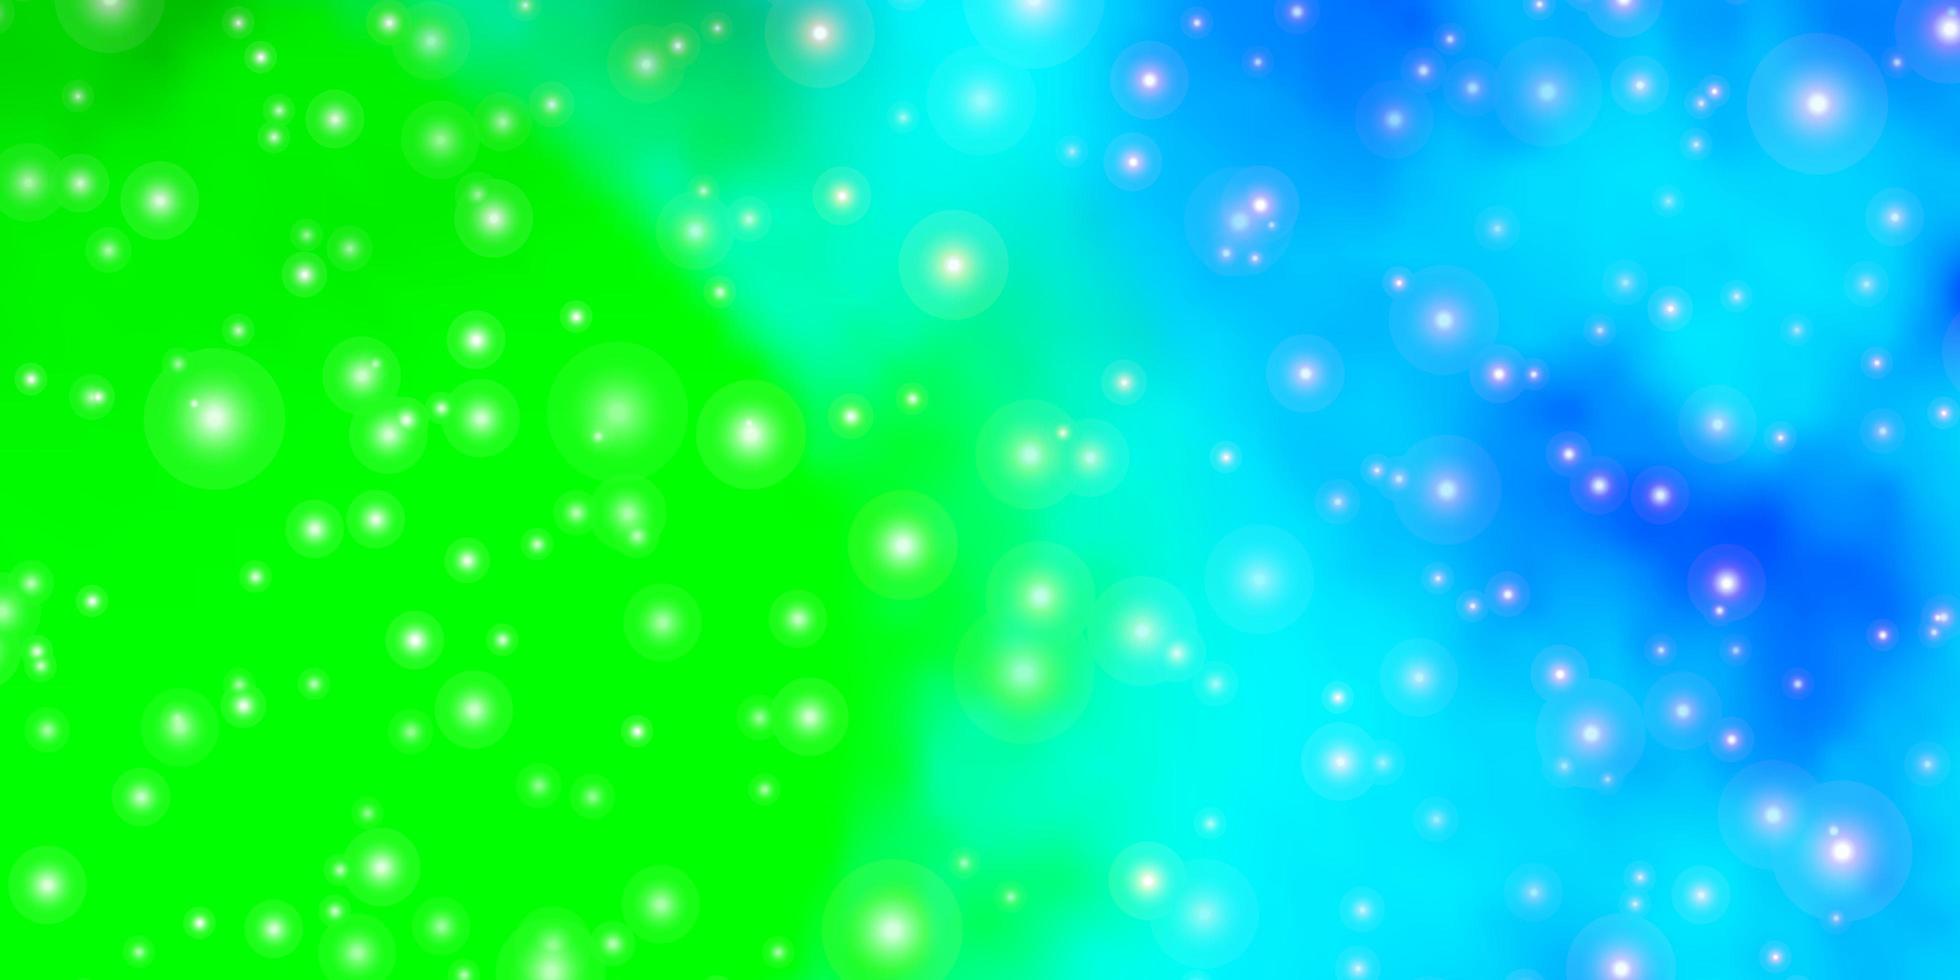 fond de vecteur vert bleu clair avec petites et grandes étoiles brillantes illustration colorée avec petites et grandes étoiles design pour la promotion de votre entreprise